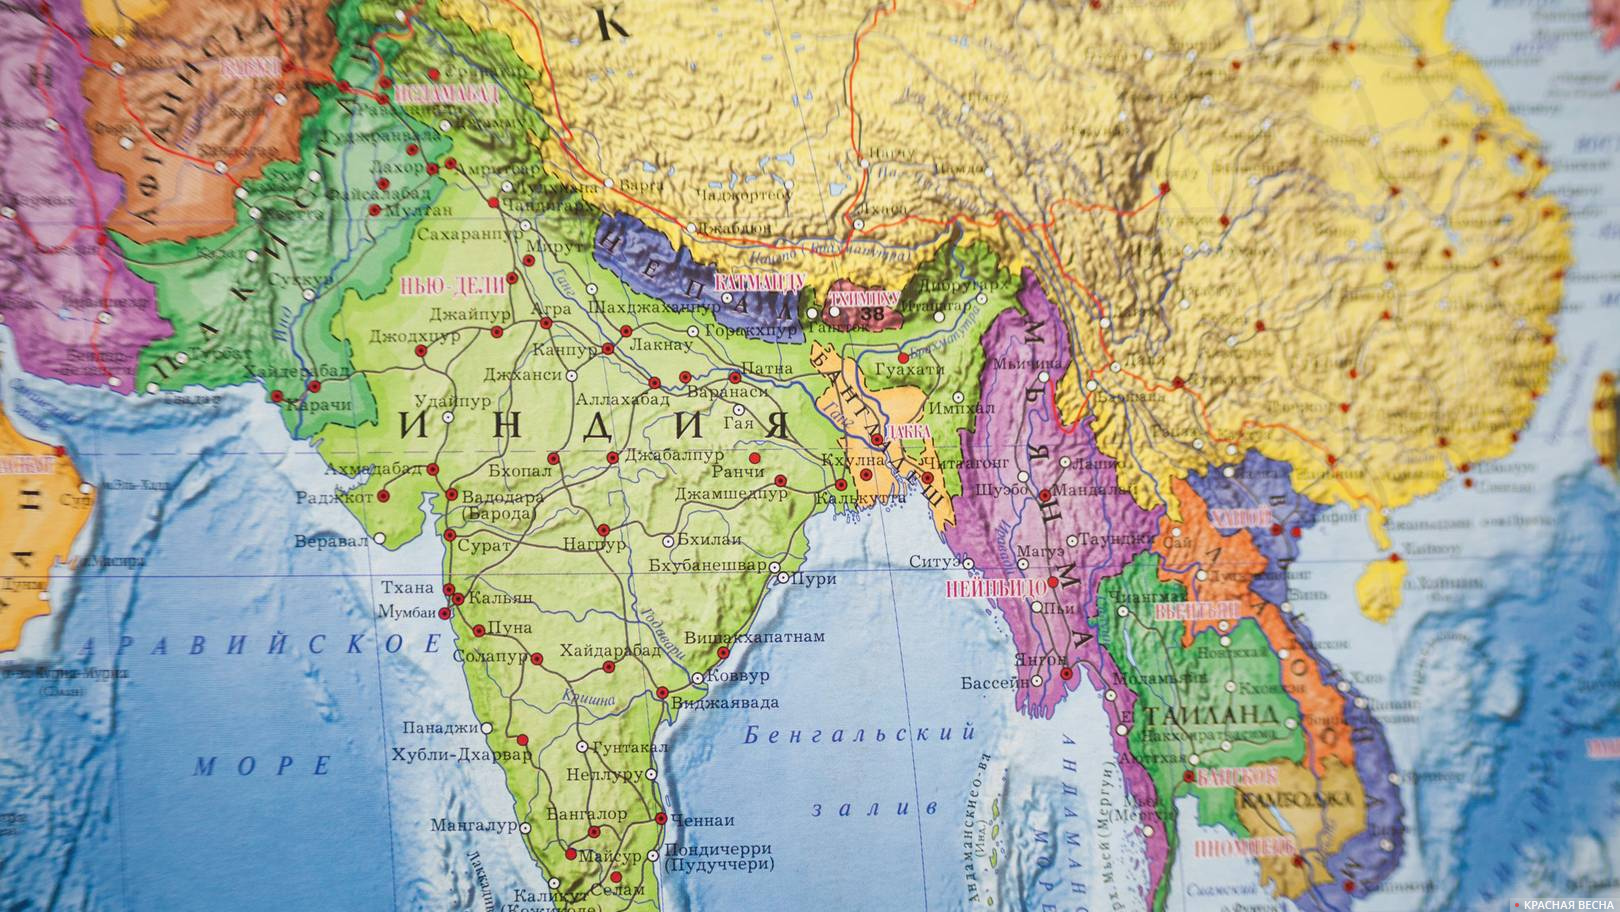 Доклад: Сельское хозяйство Индии и Китая